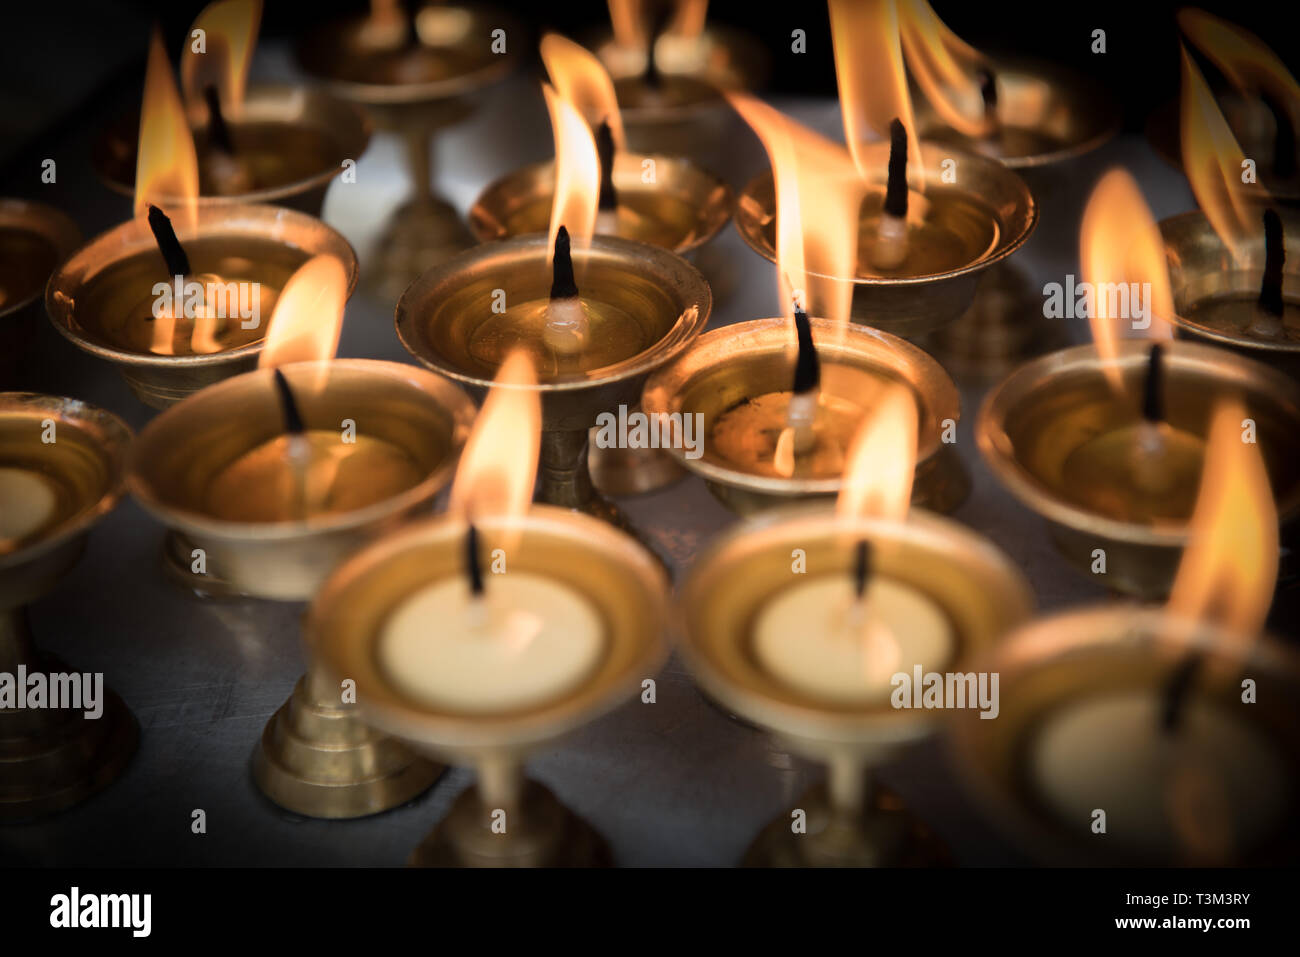 Lit prayer candles at the Ganesh shrine, Ason Tol, Kathmandu, Nepal Stock Photo